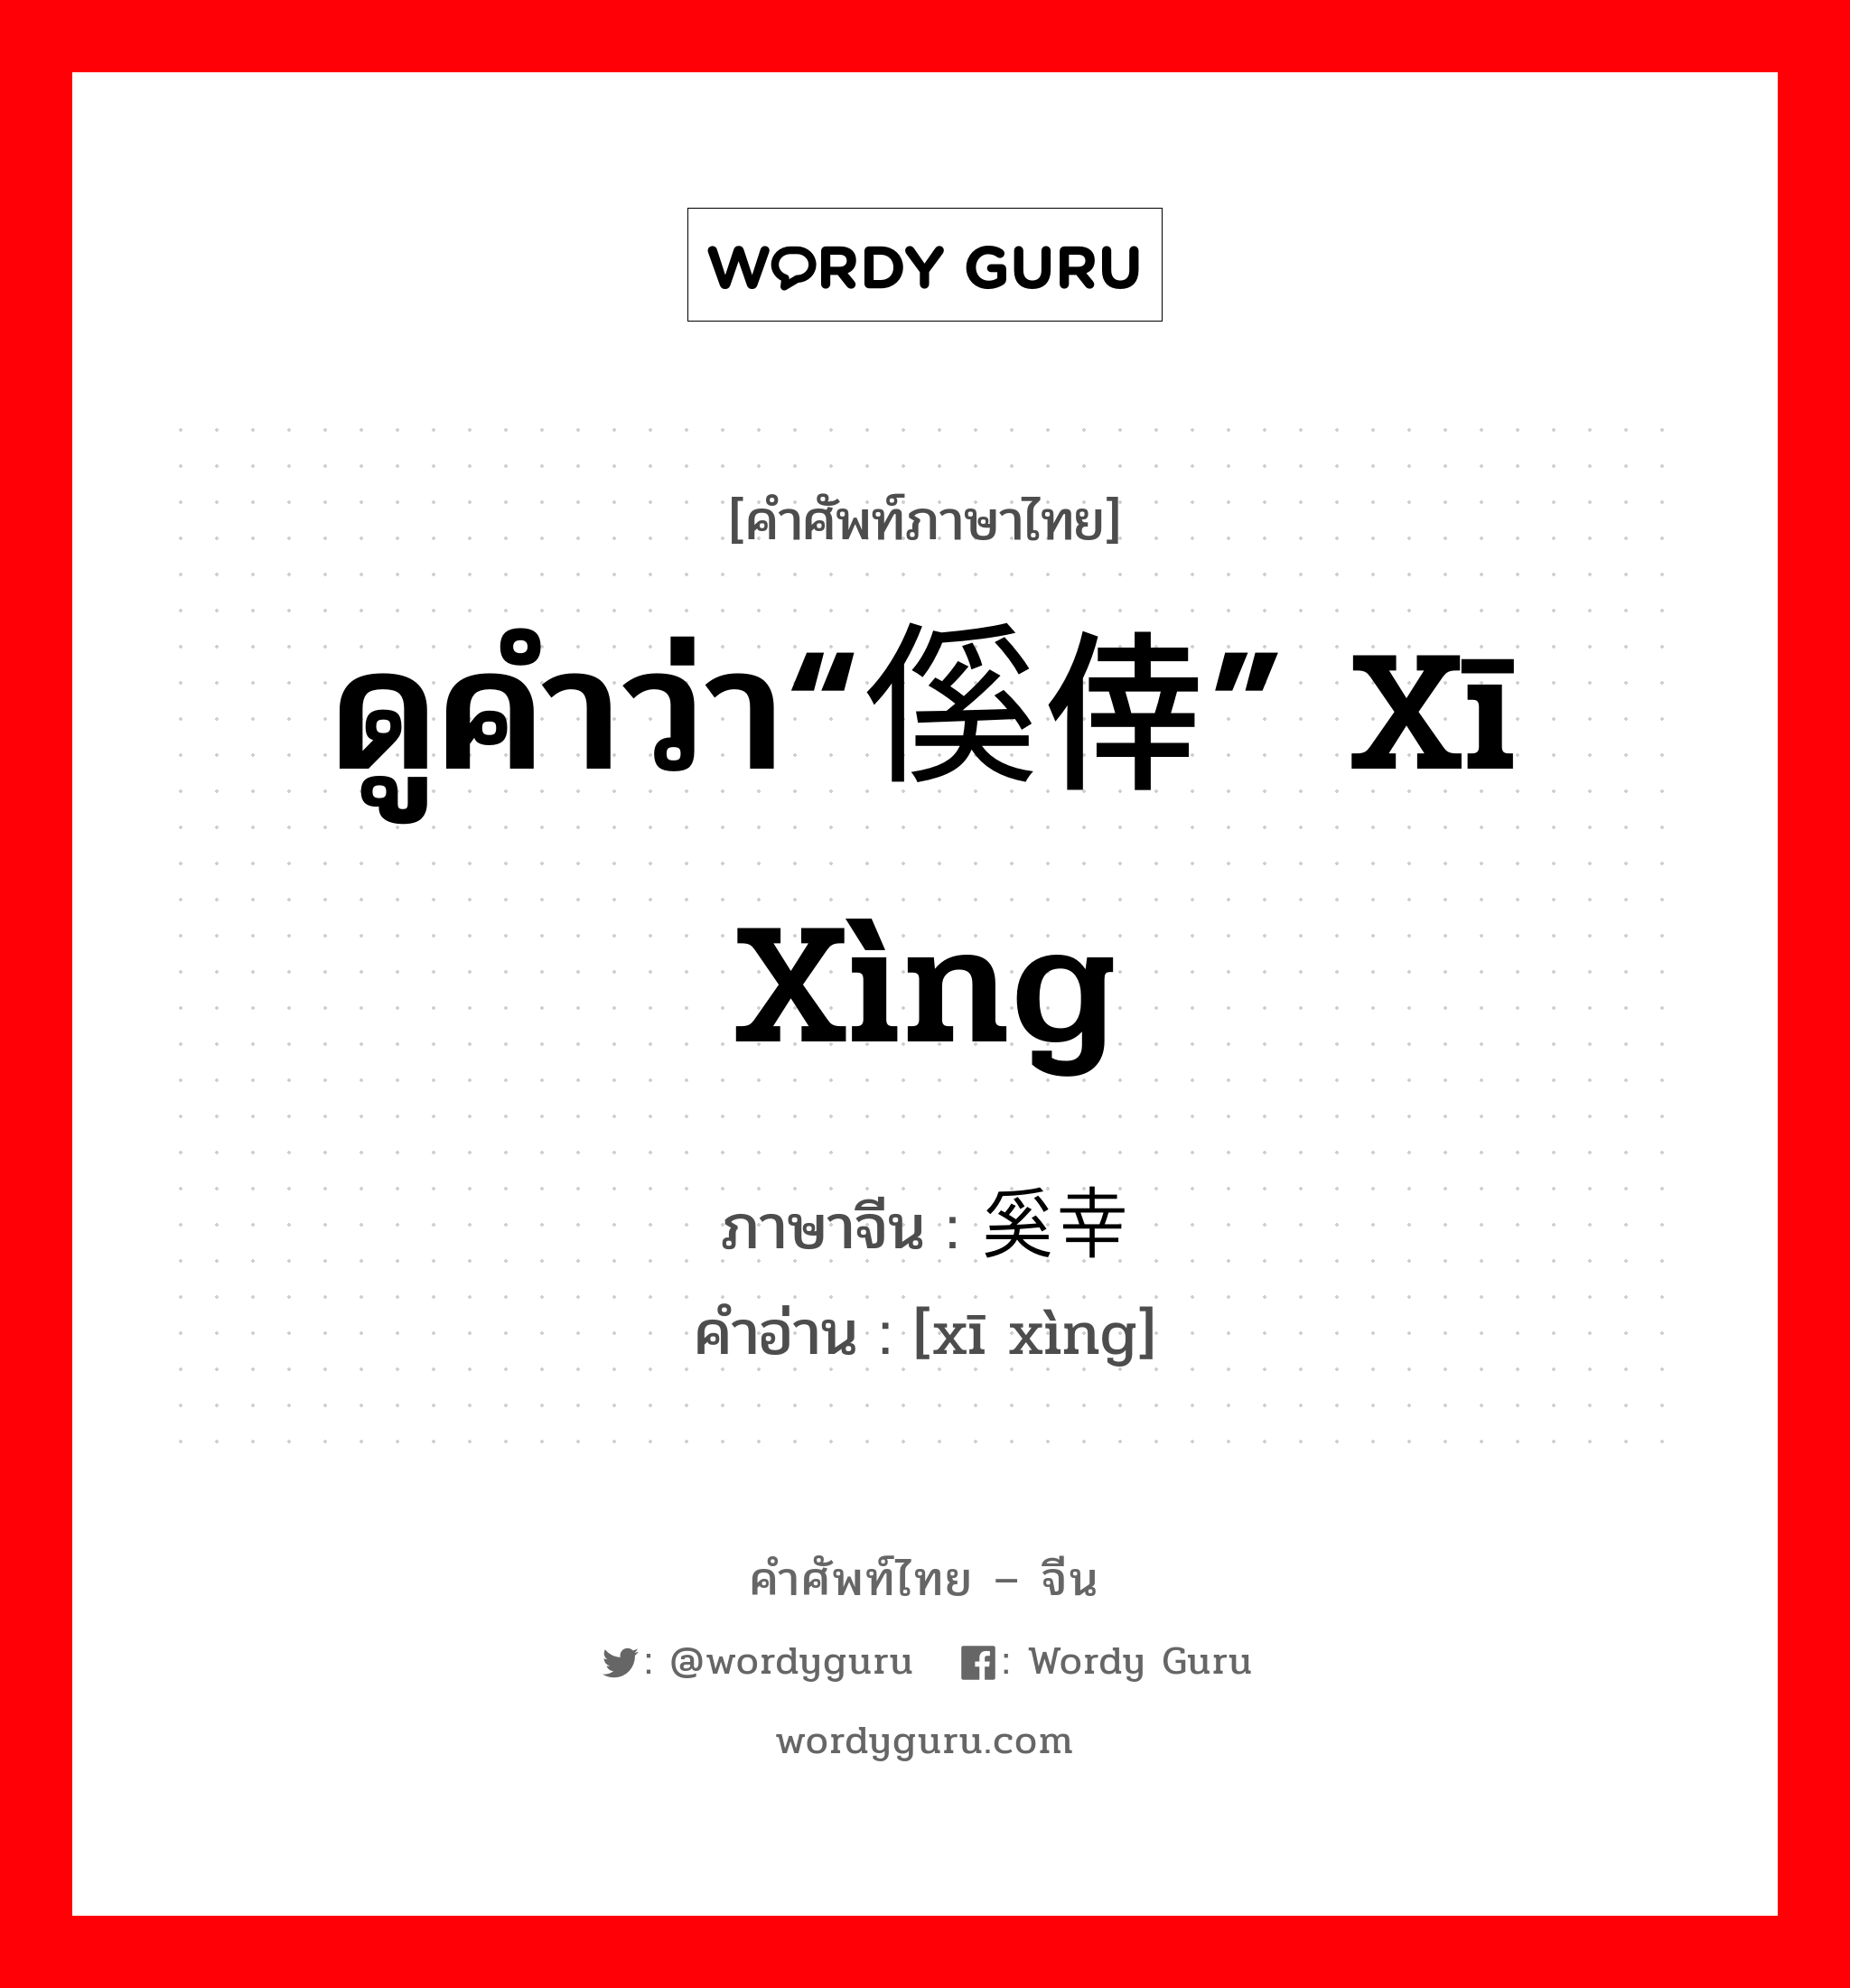 ดูคำว่า“傒倖” xī xìng ภาษาจีนคืออะไร, คำศัพท์ภาษาไทย - จีน ดูคำว่า“傒倖” xī xìng ภาษาจีน 奚幸 คำอ่าน [xī xìng]